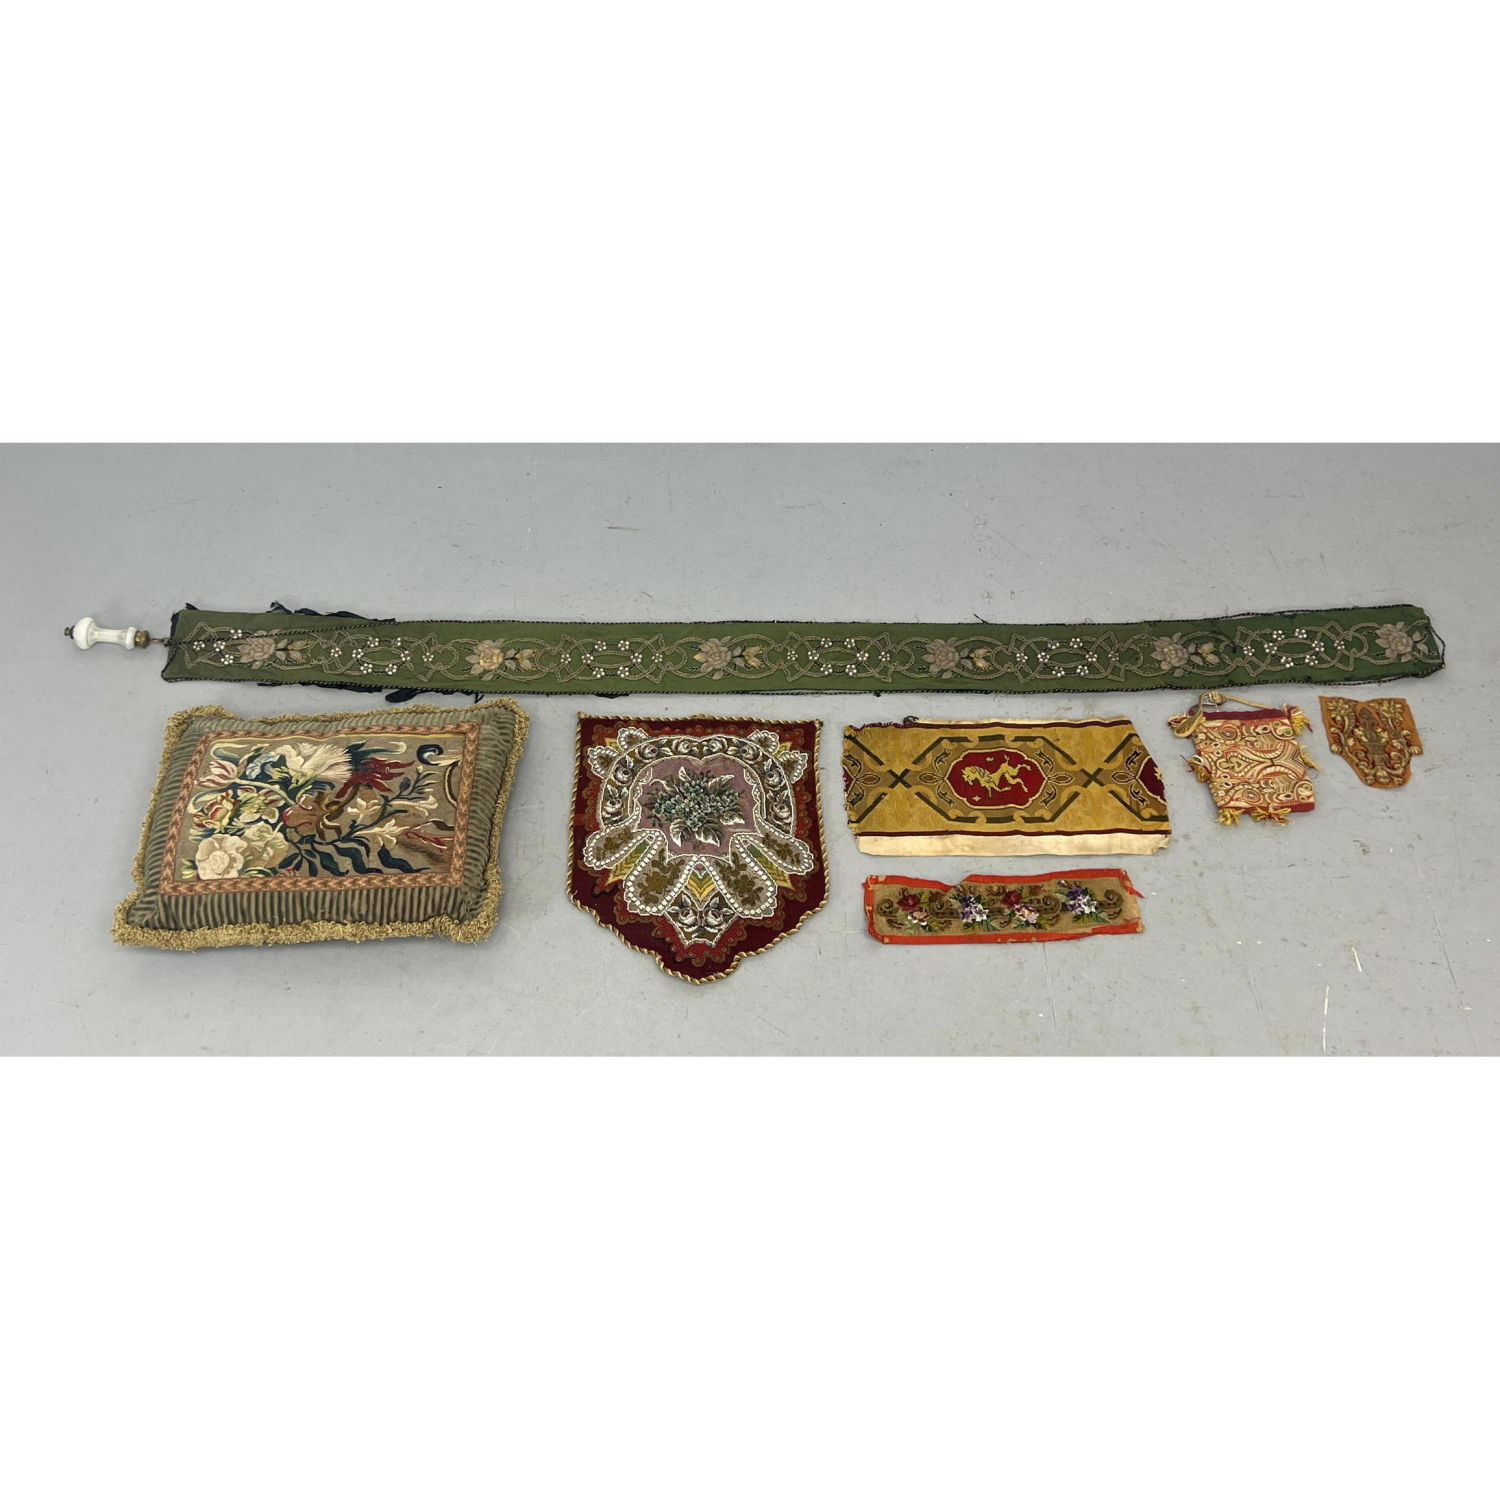 Antique textiles including Aubusson